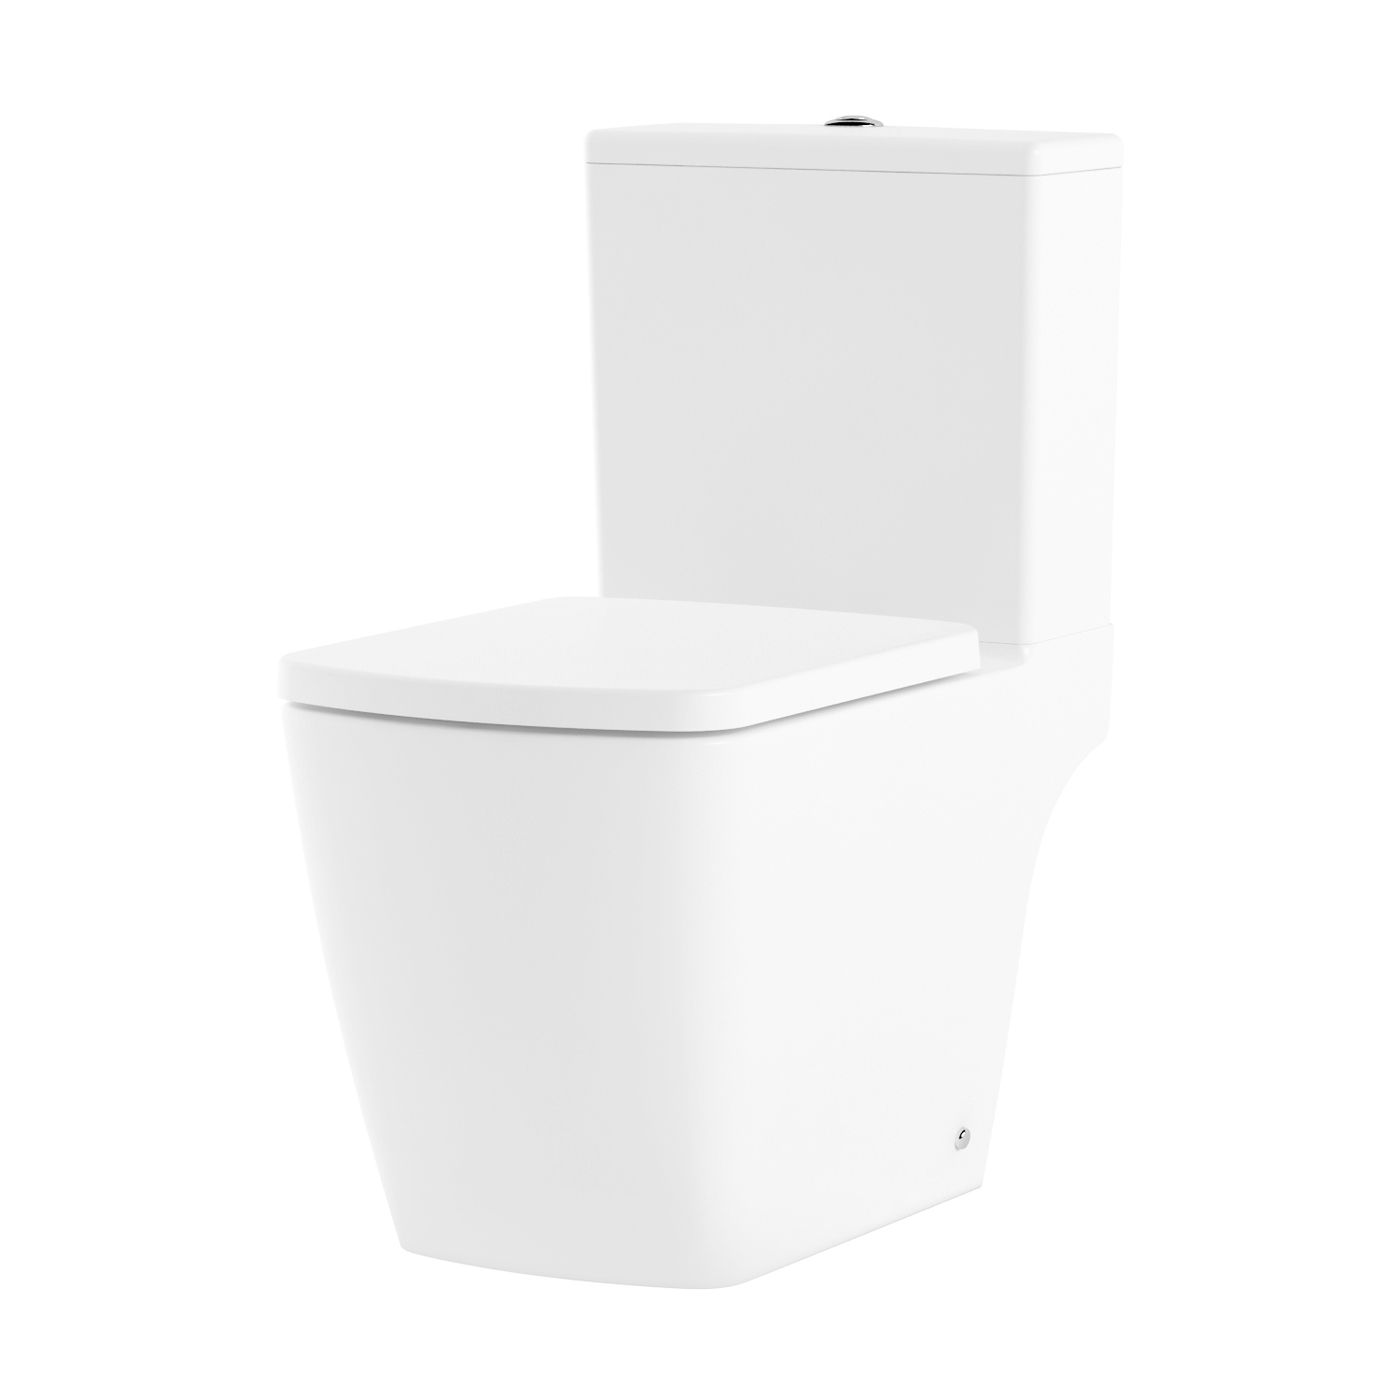 Ремонт ванной и туалета в р-не Восточное Измайлово — рядом сантехников, 44 отзыва на Профи